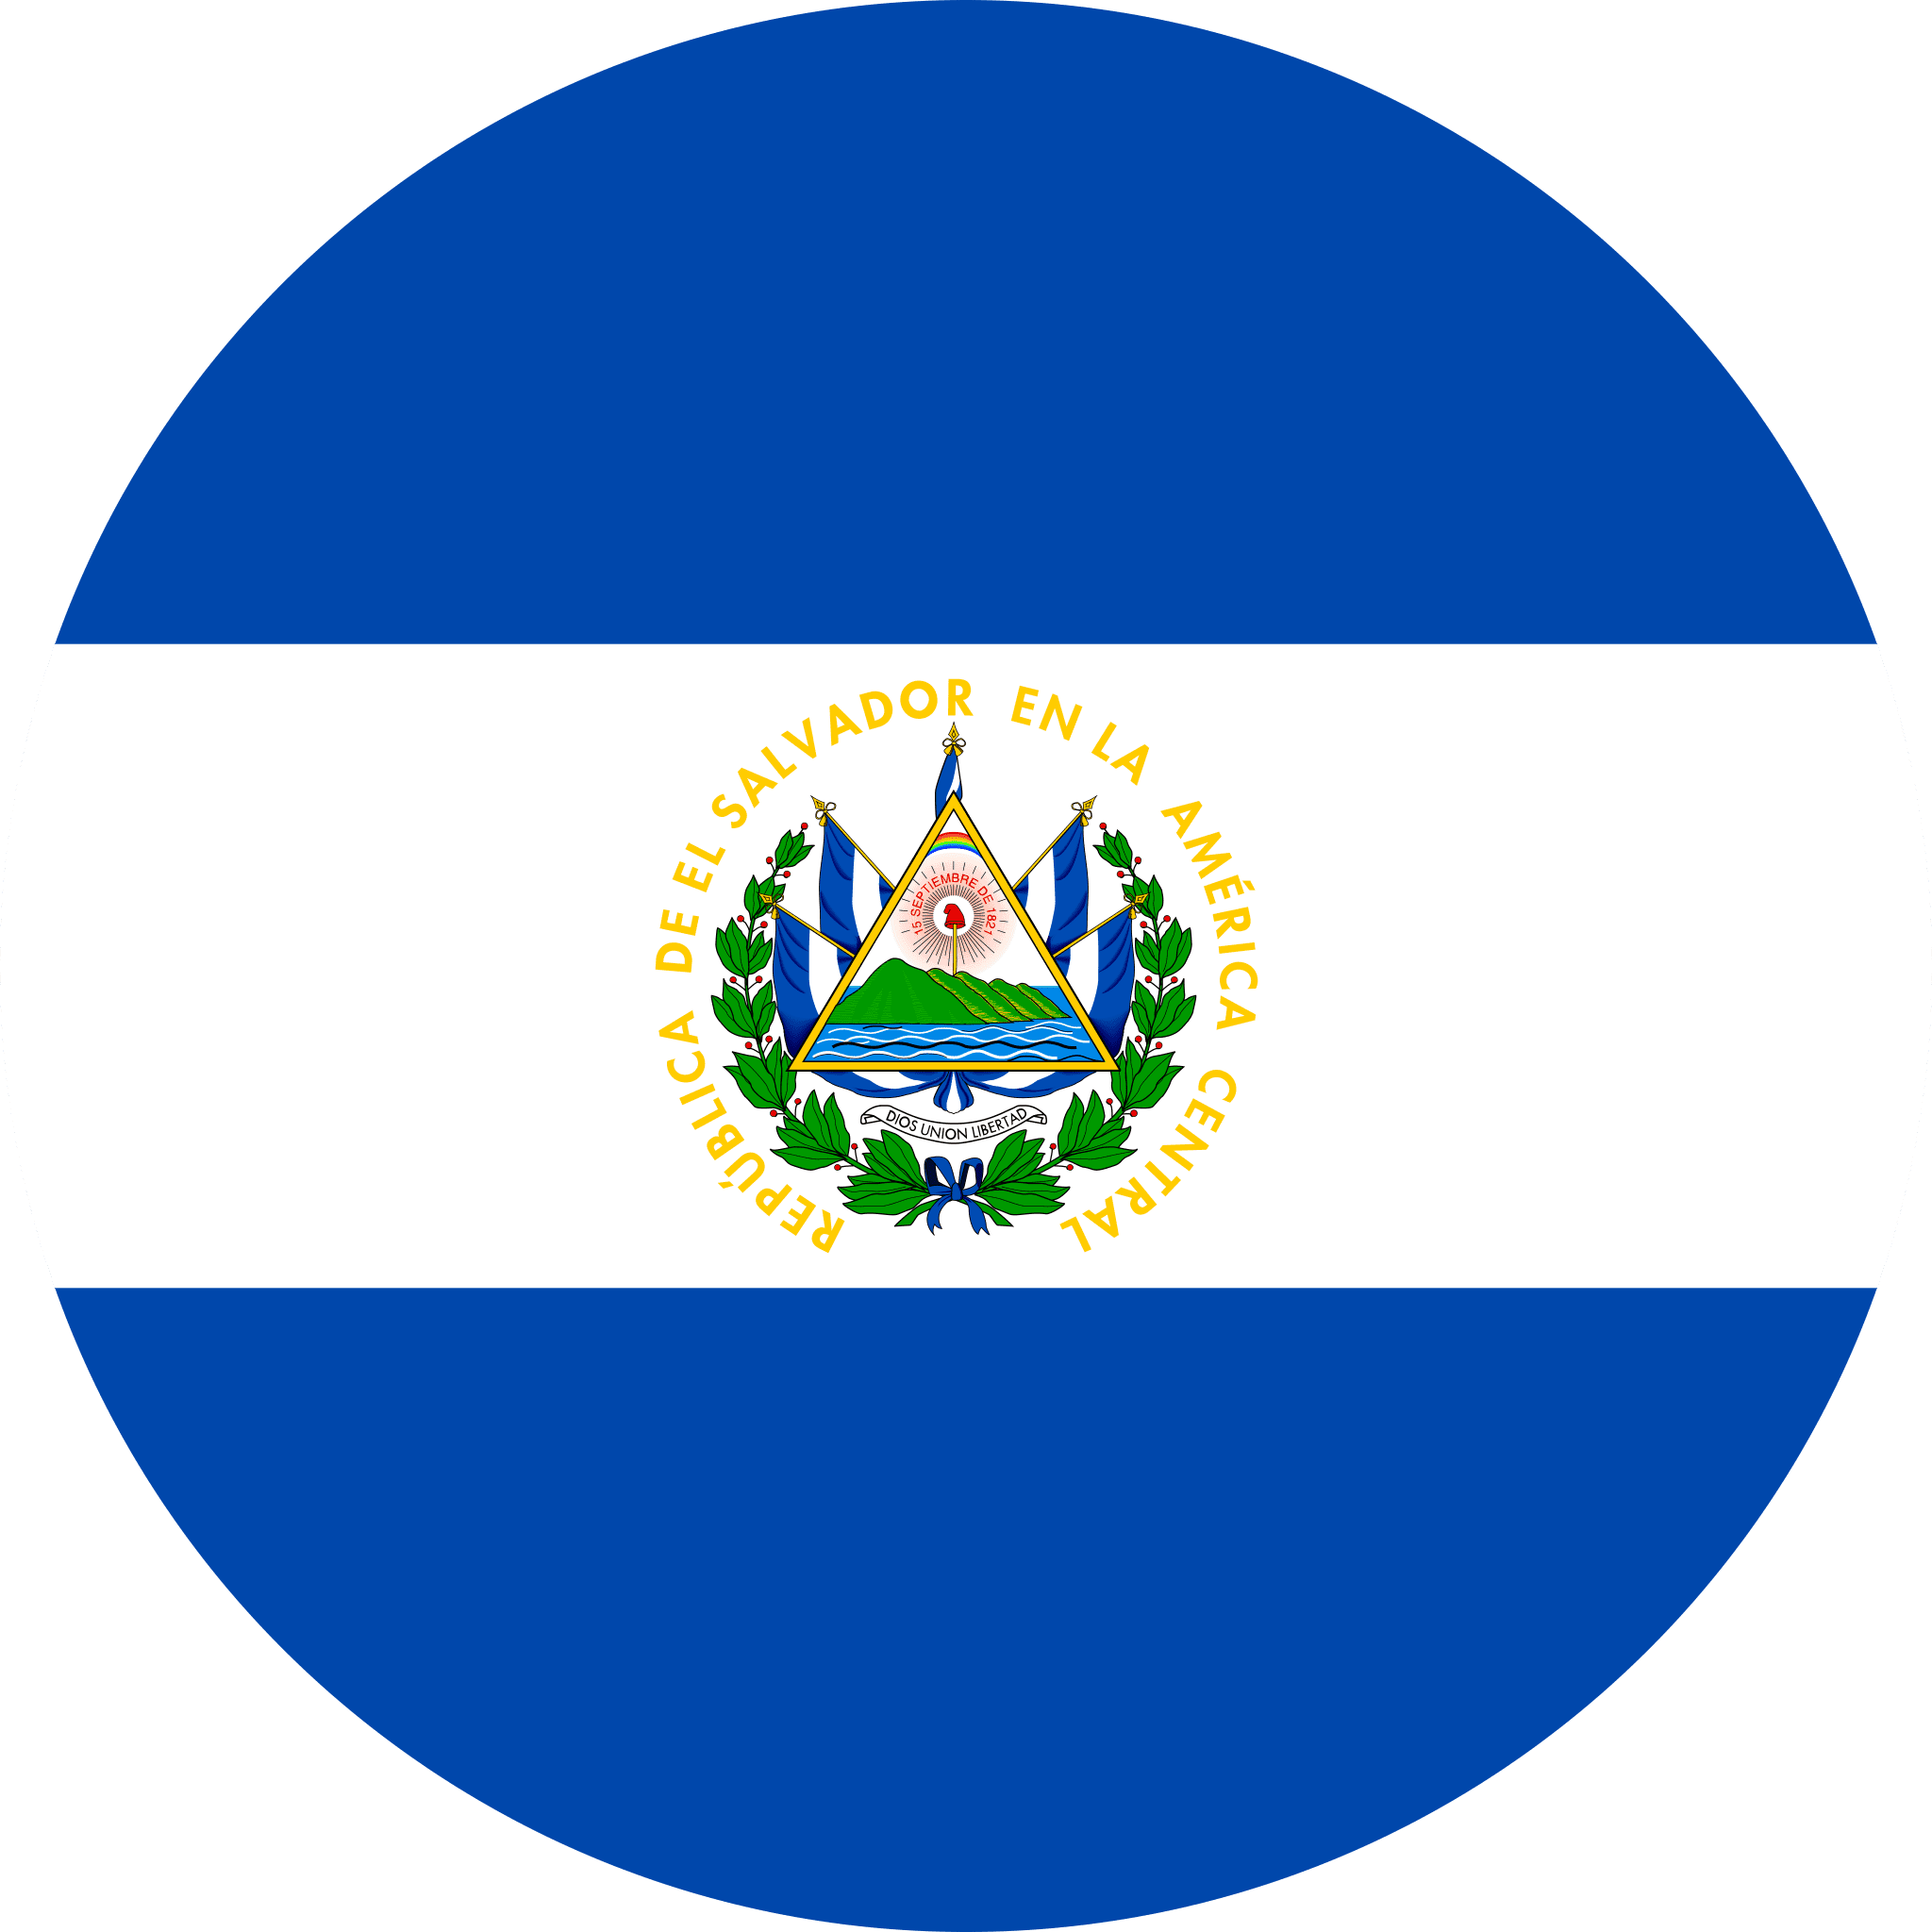 Nữ El Salvador